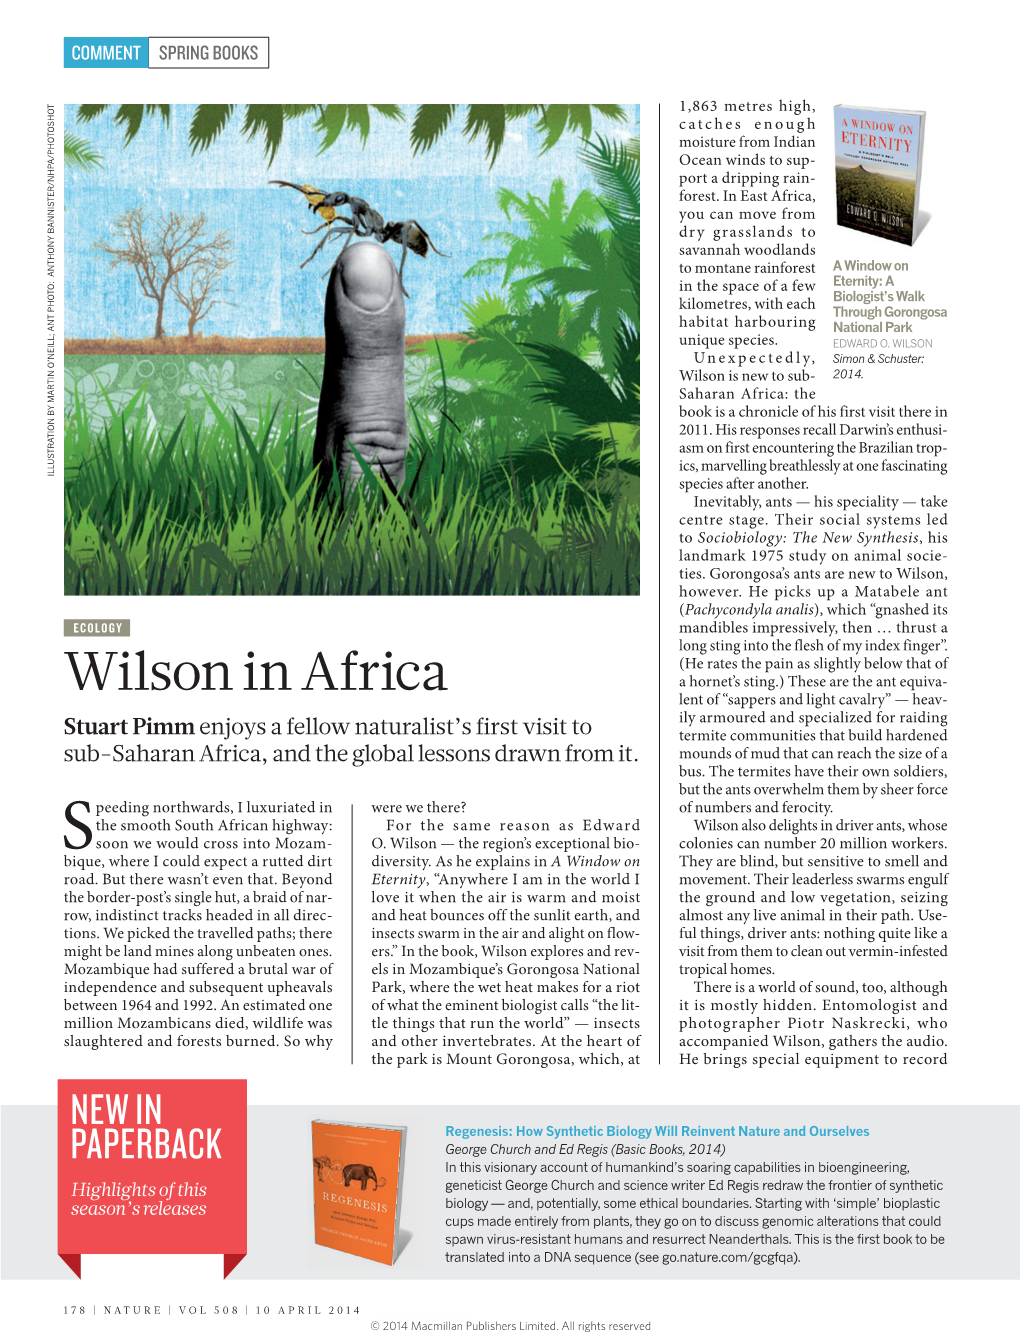 Wilson in Africa